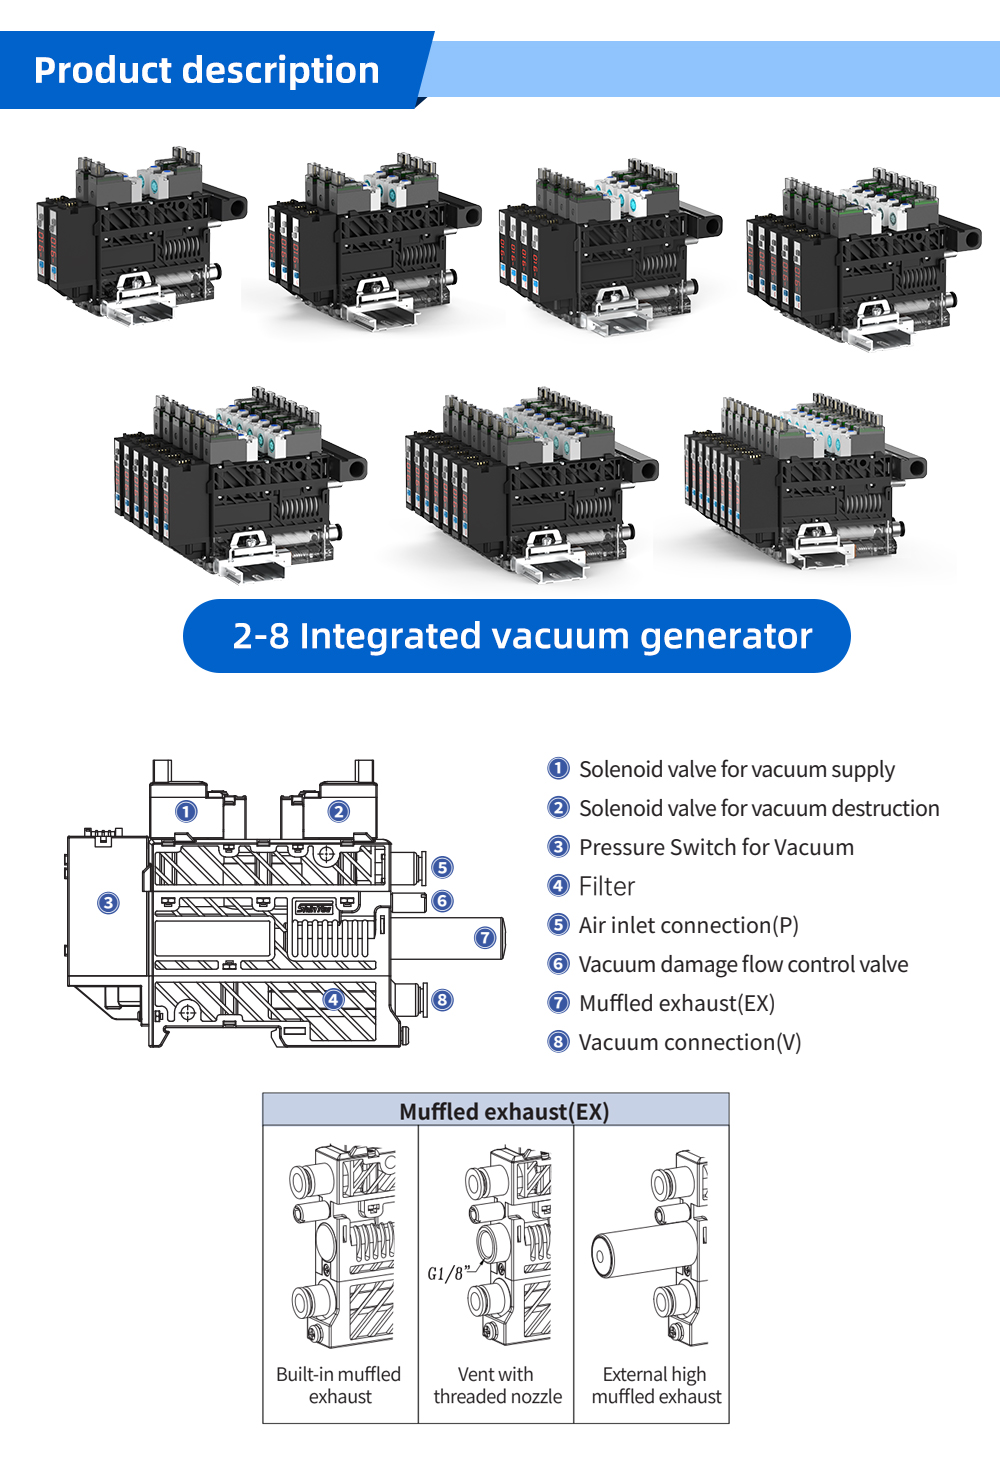 Multi-unit vacuum generator built-in noise reduction_01